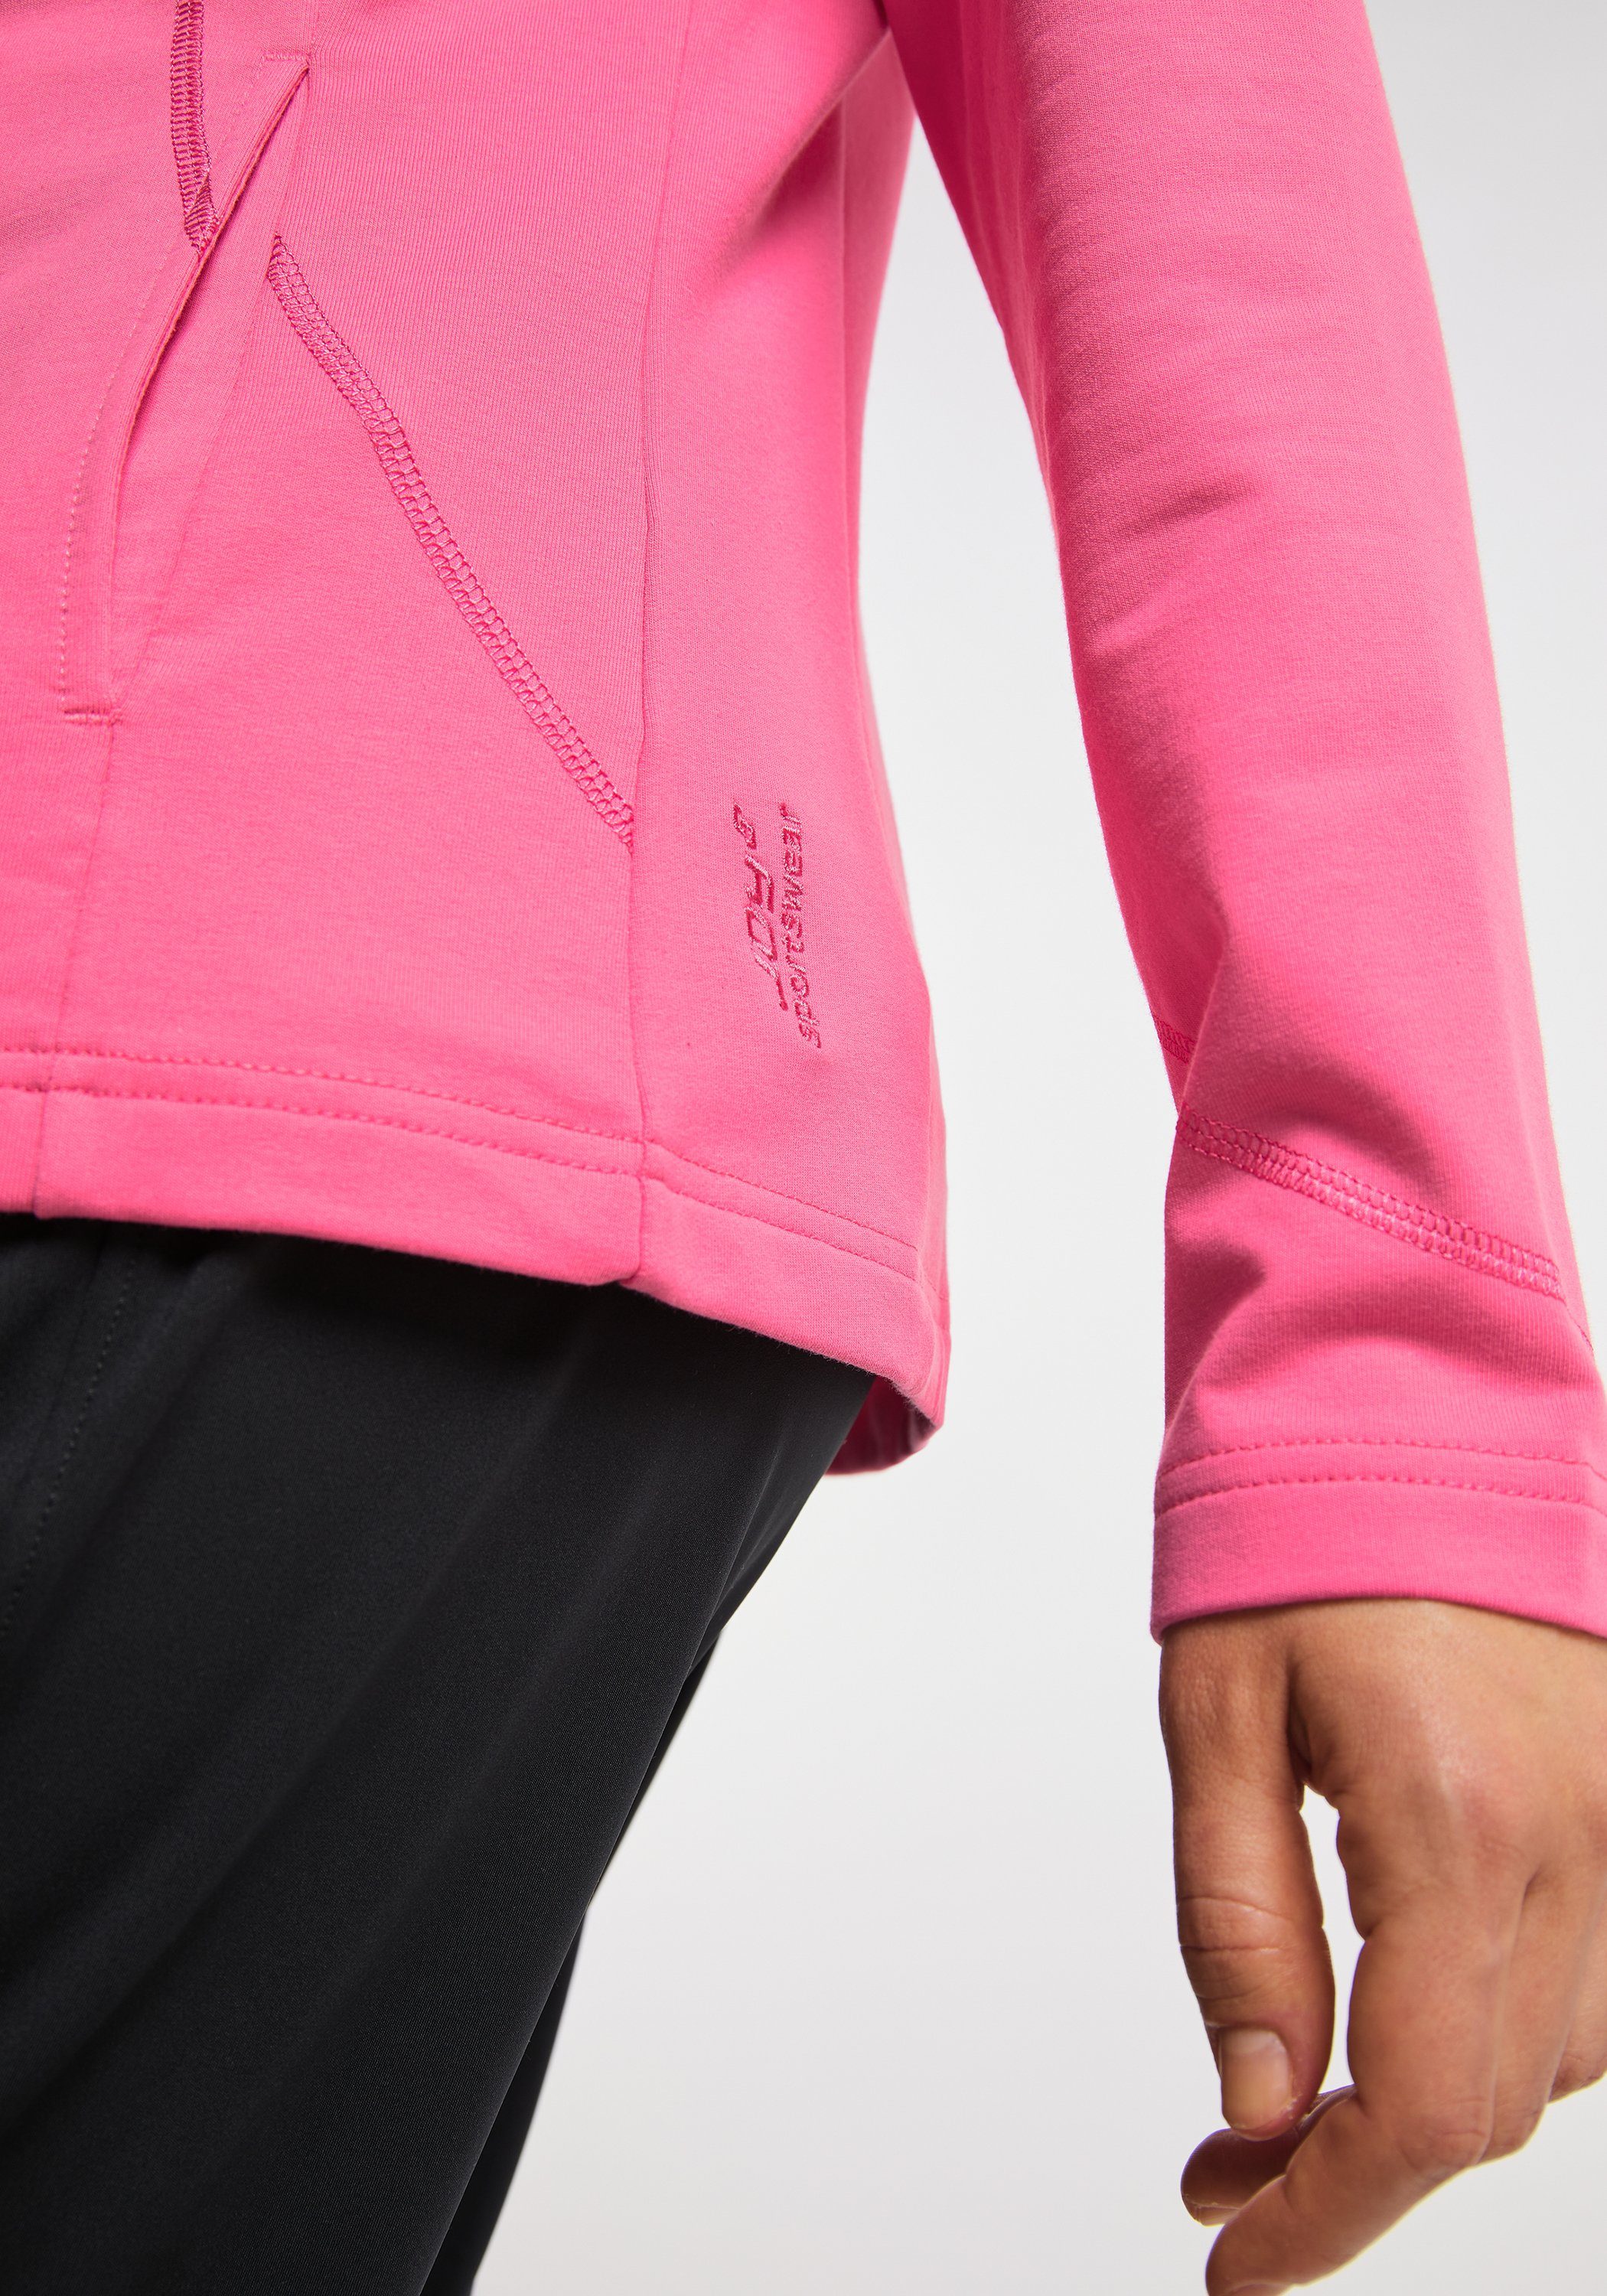 pink DORIT Jacke Joy camelia Sportswear Trainingsjacke